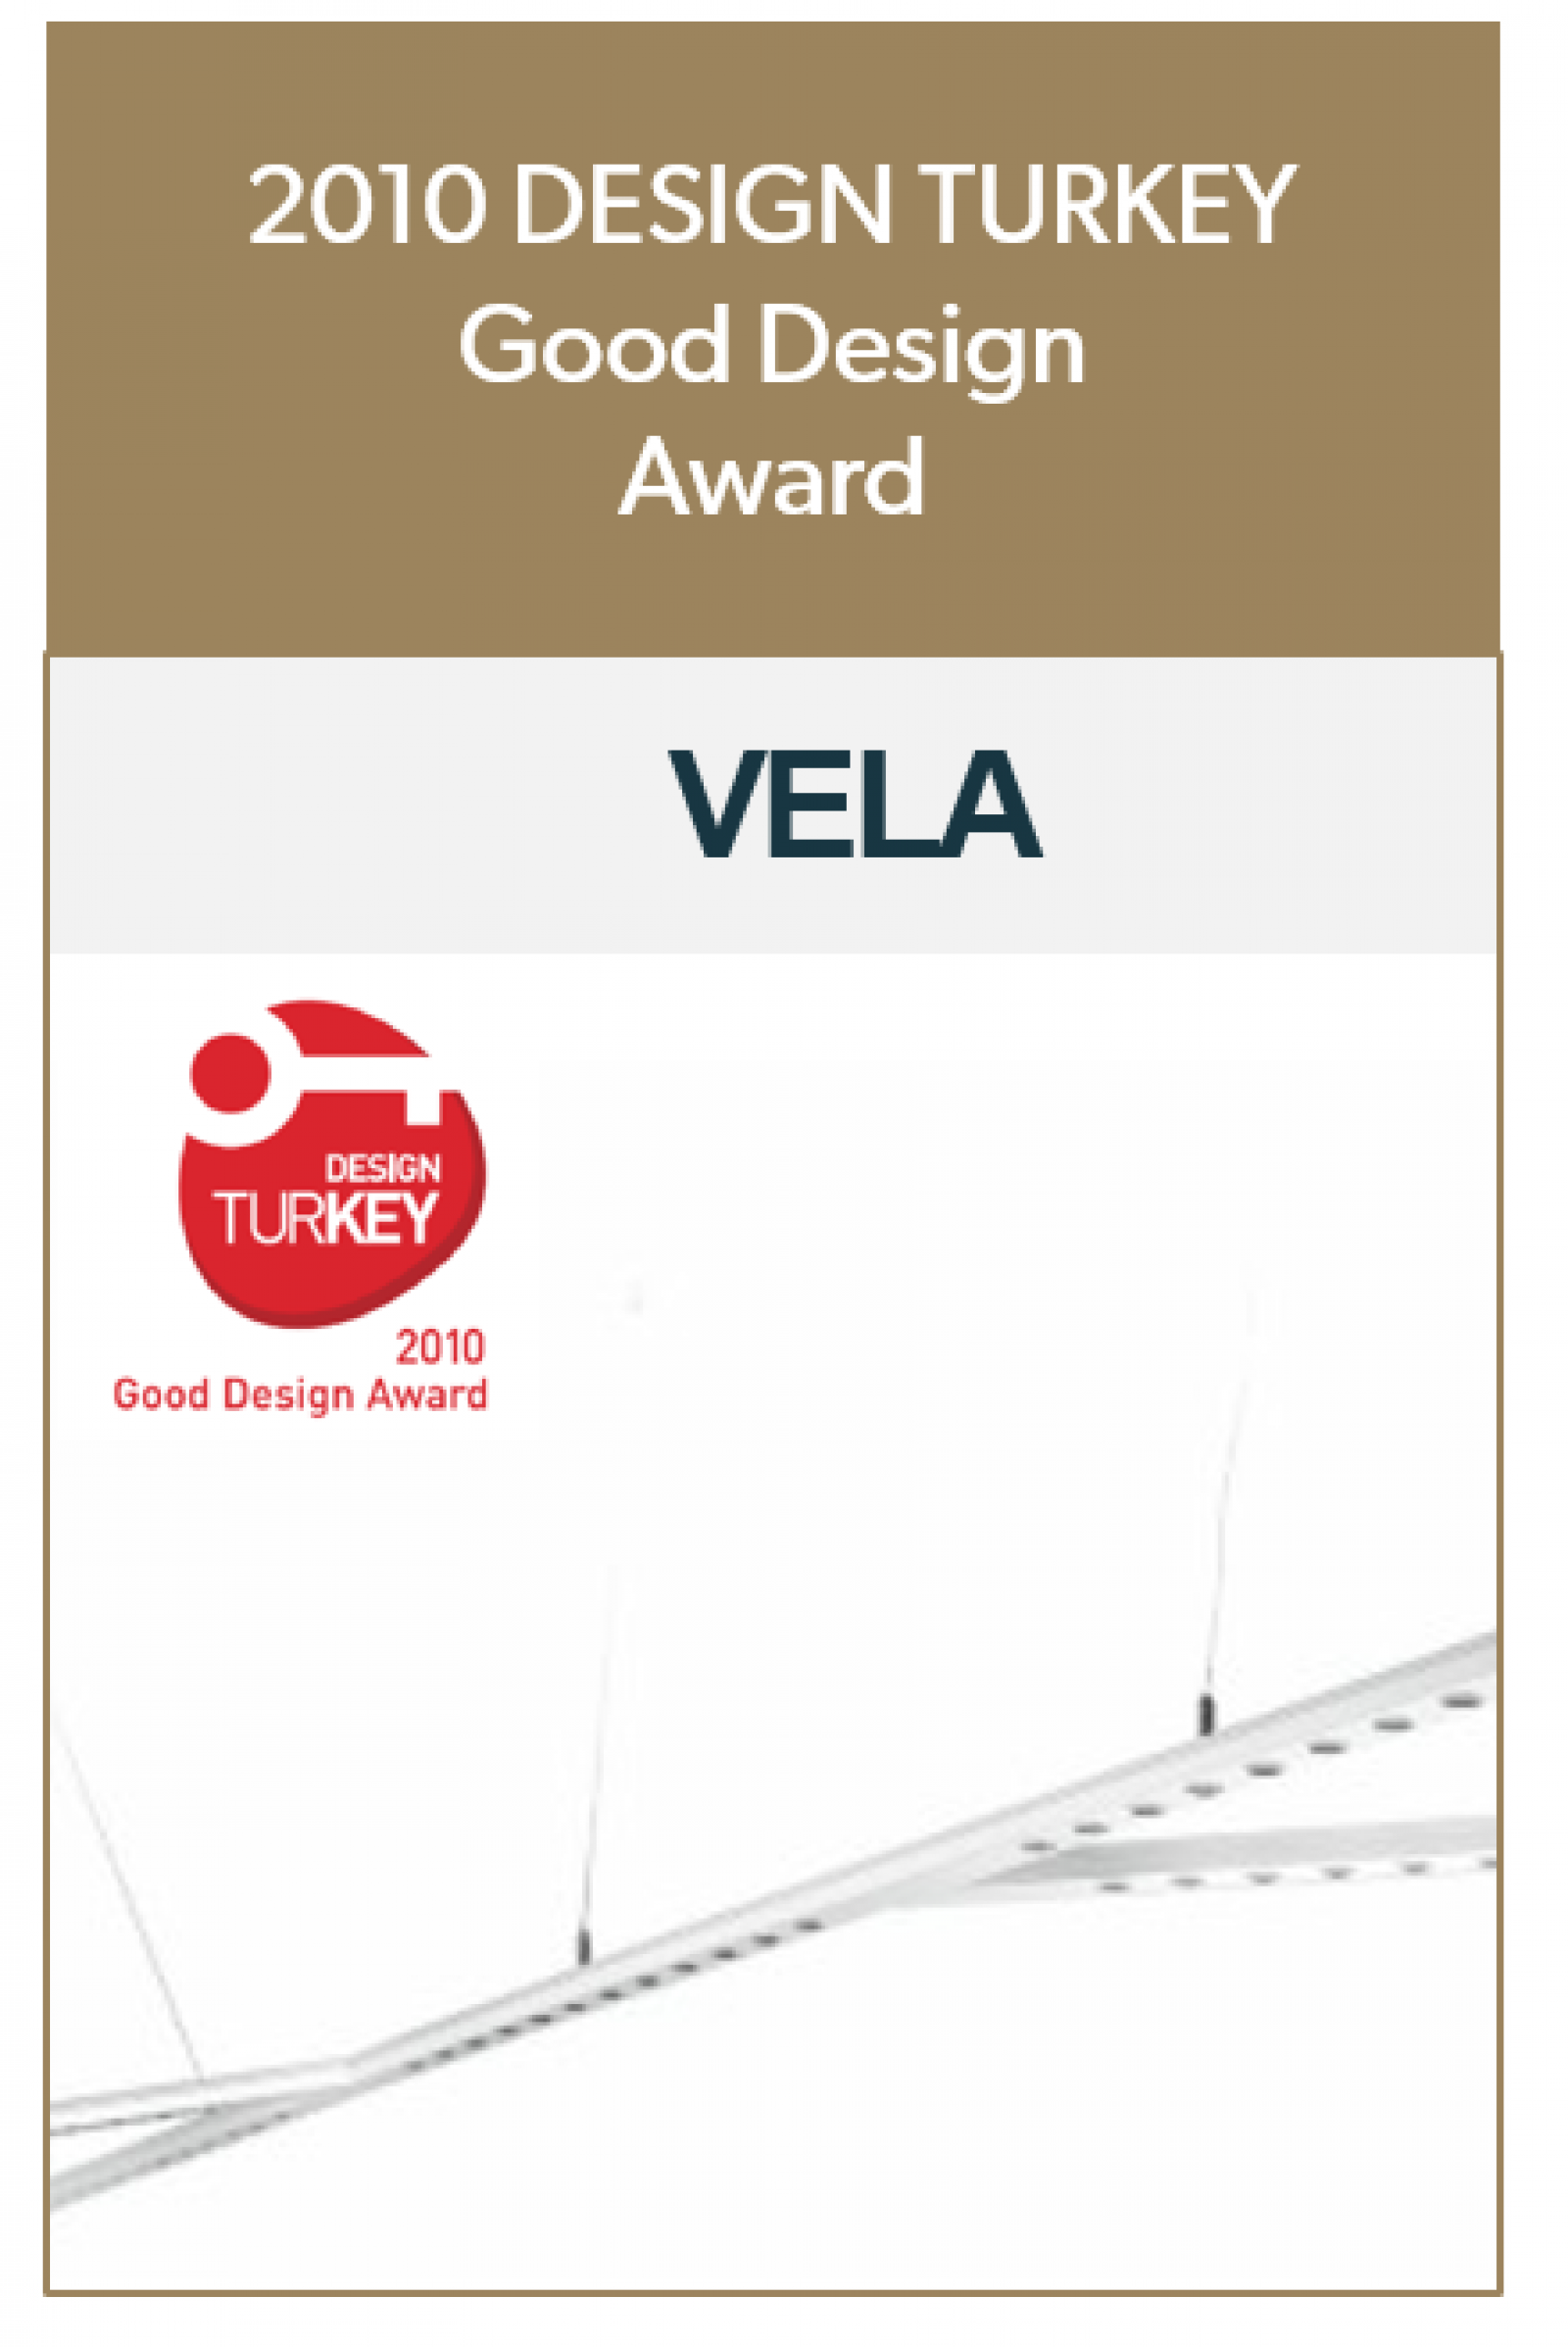 VELA Good Design Award